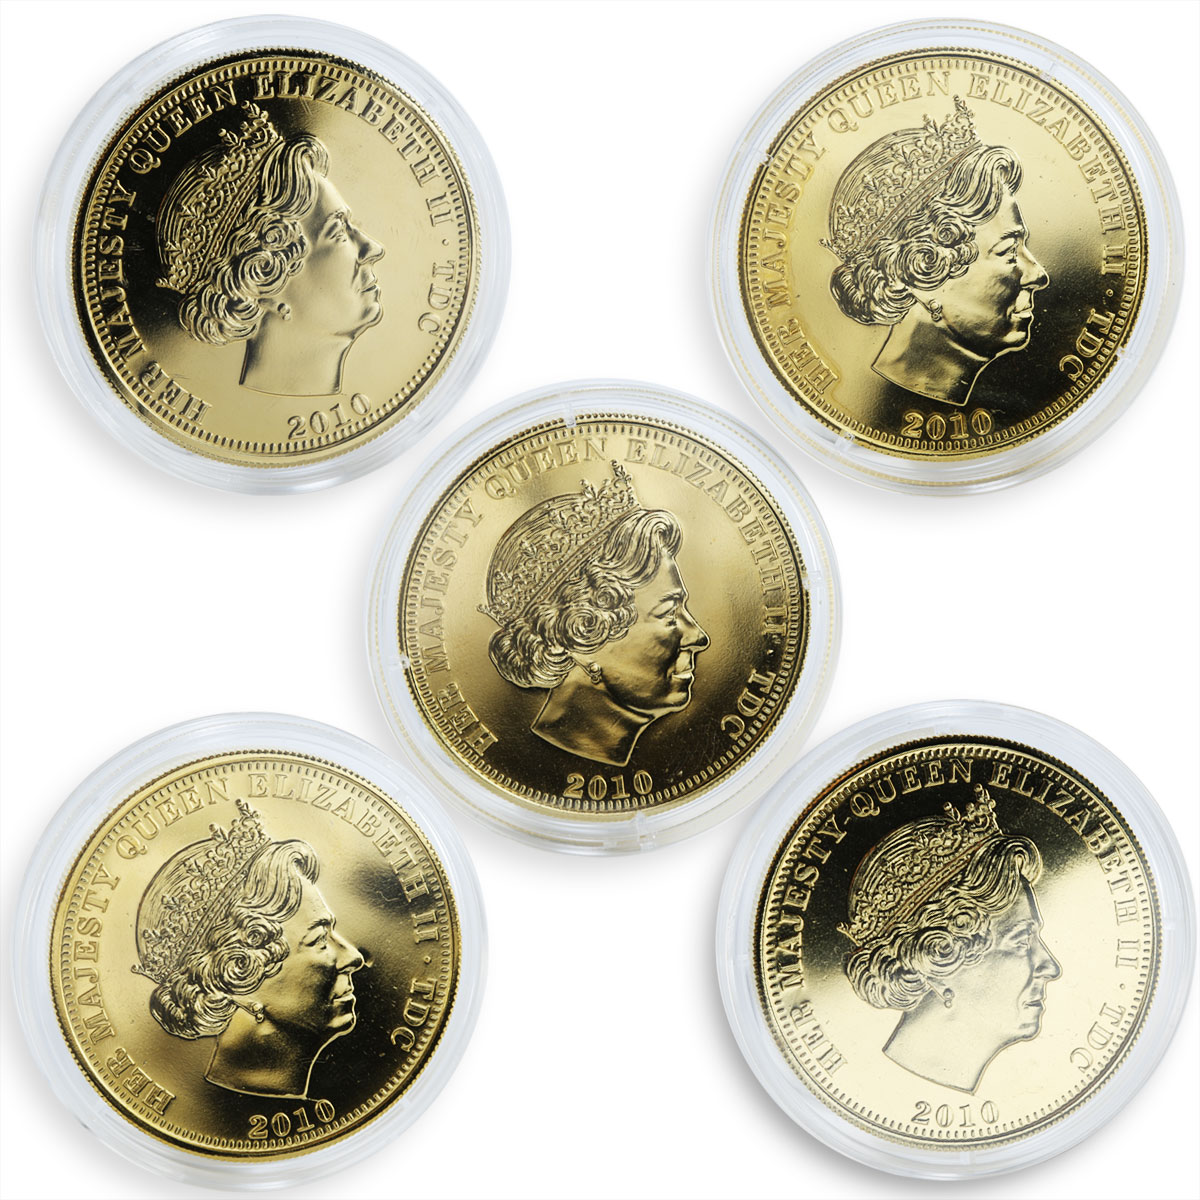 United Kingdom 1 crown 5 coins Set Great British Heroes Gilded nickel 2010